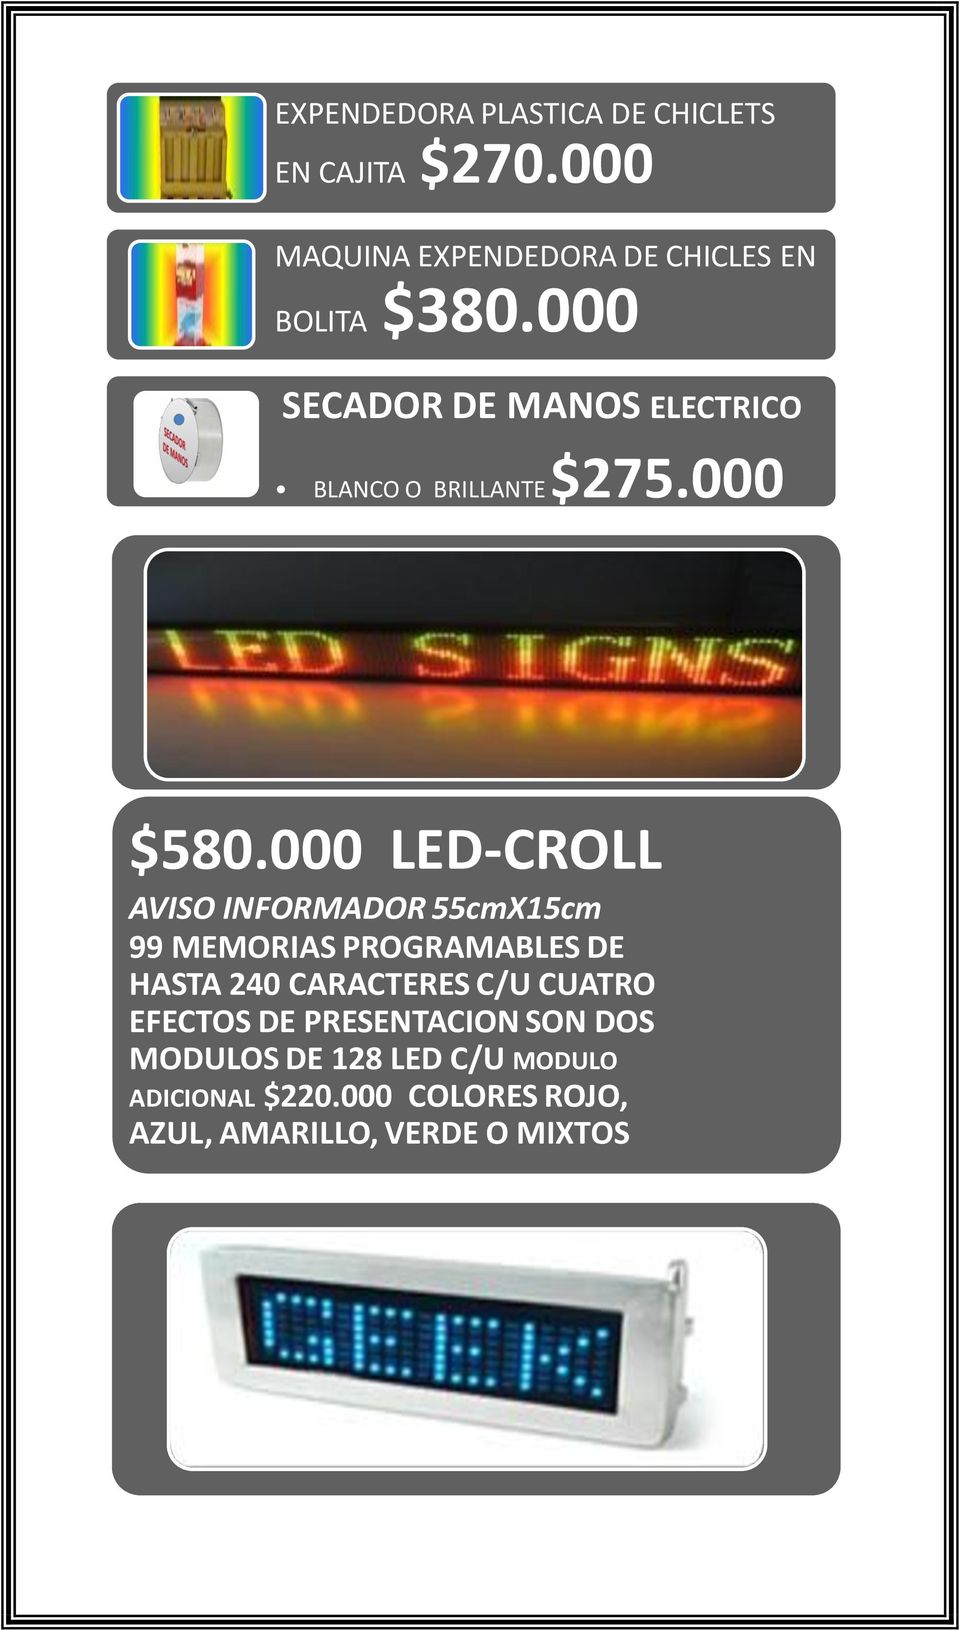 000 SECADOR DE MANOS ELECTRICO BLANCO O BRILLANTE $275.000 $580.